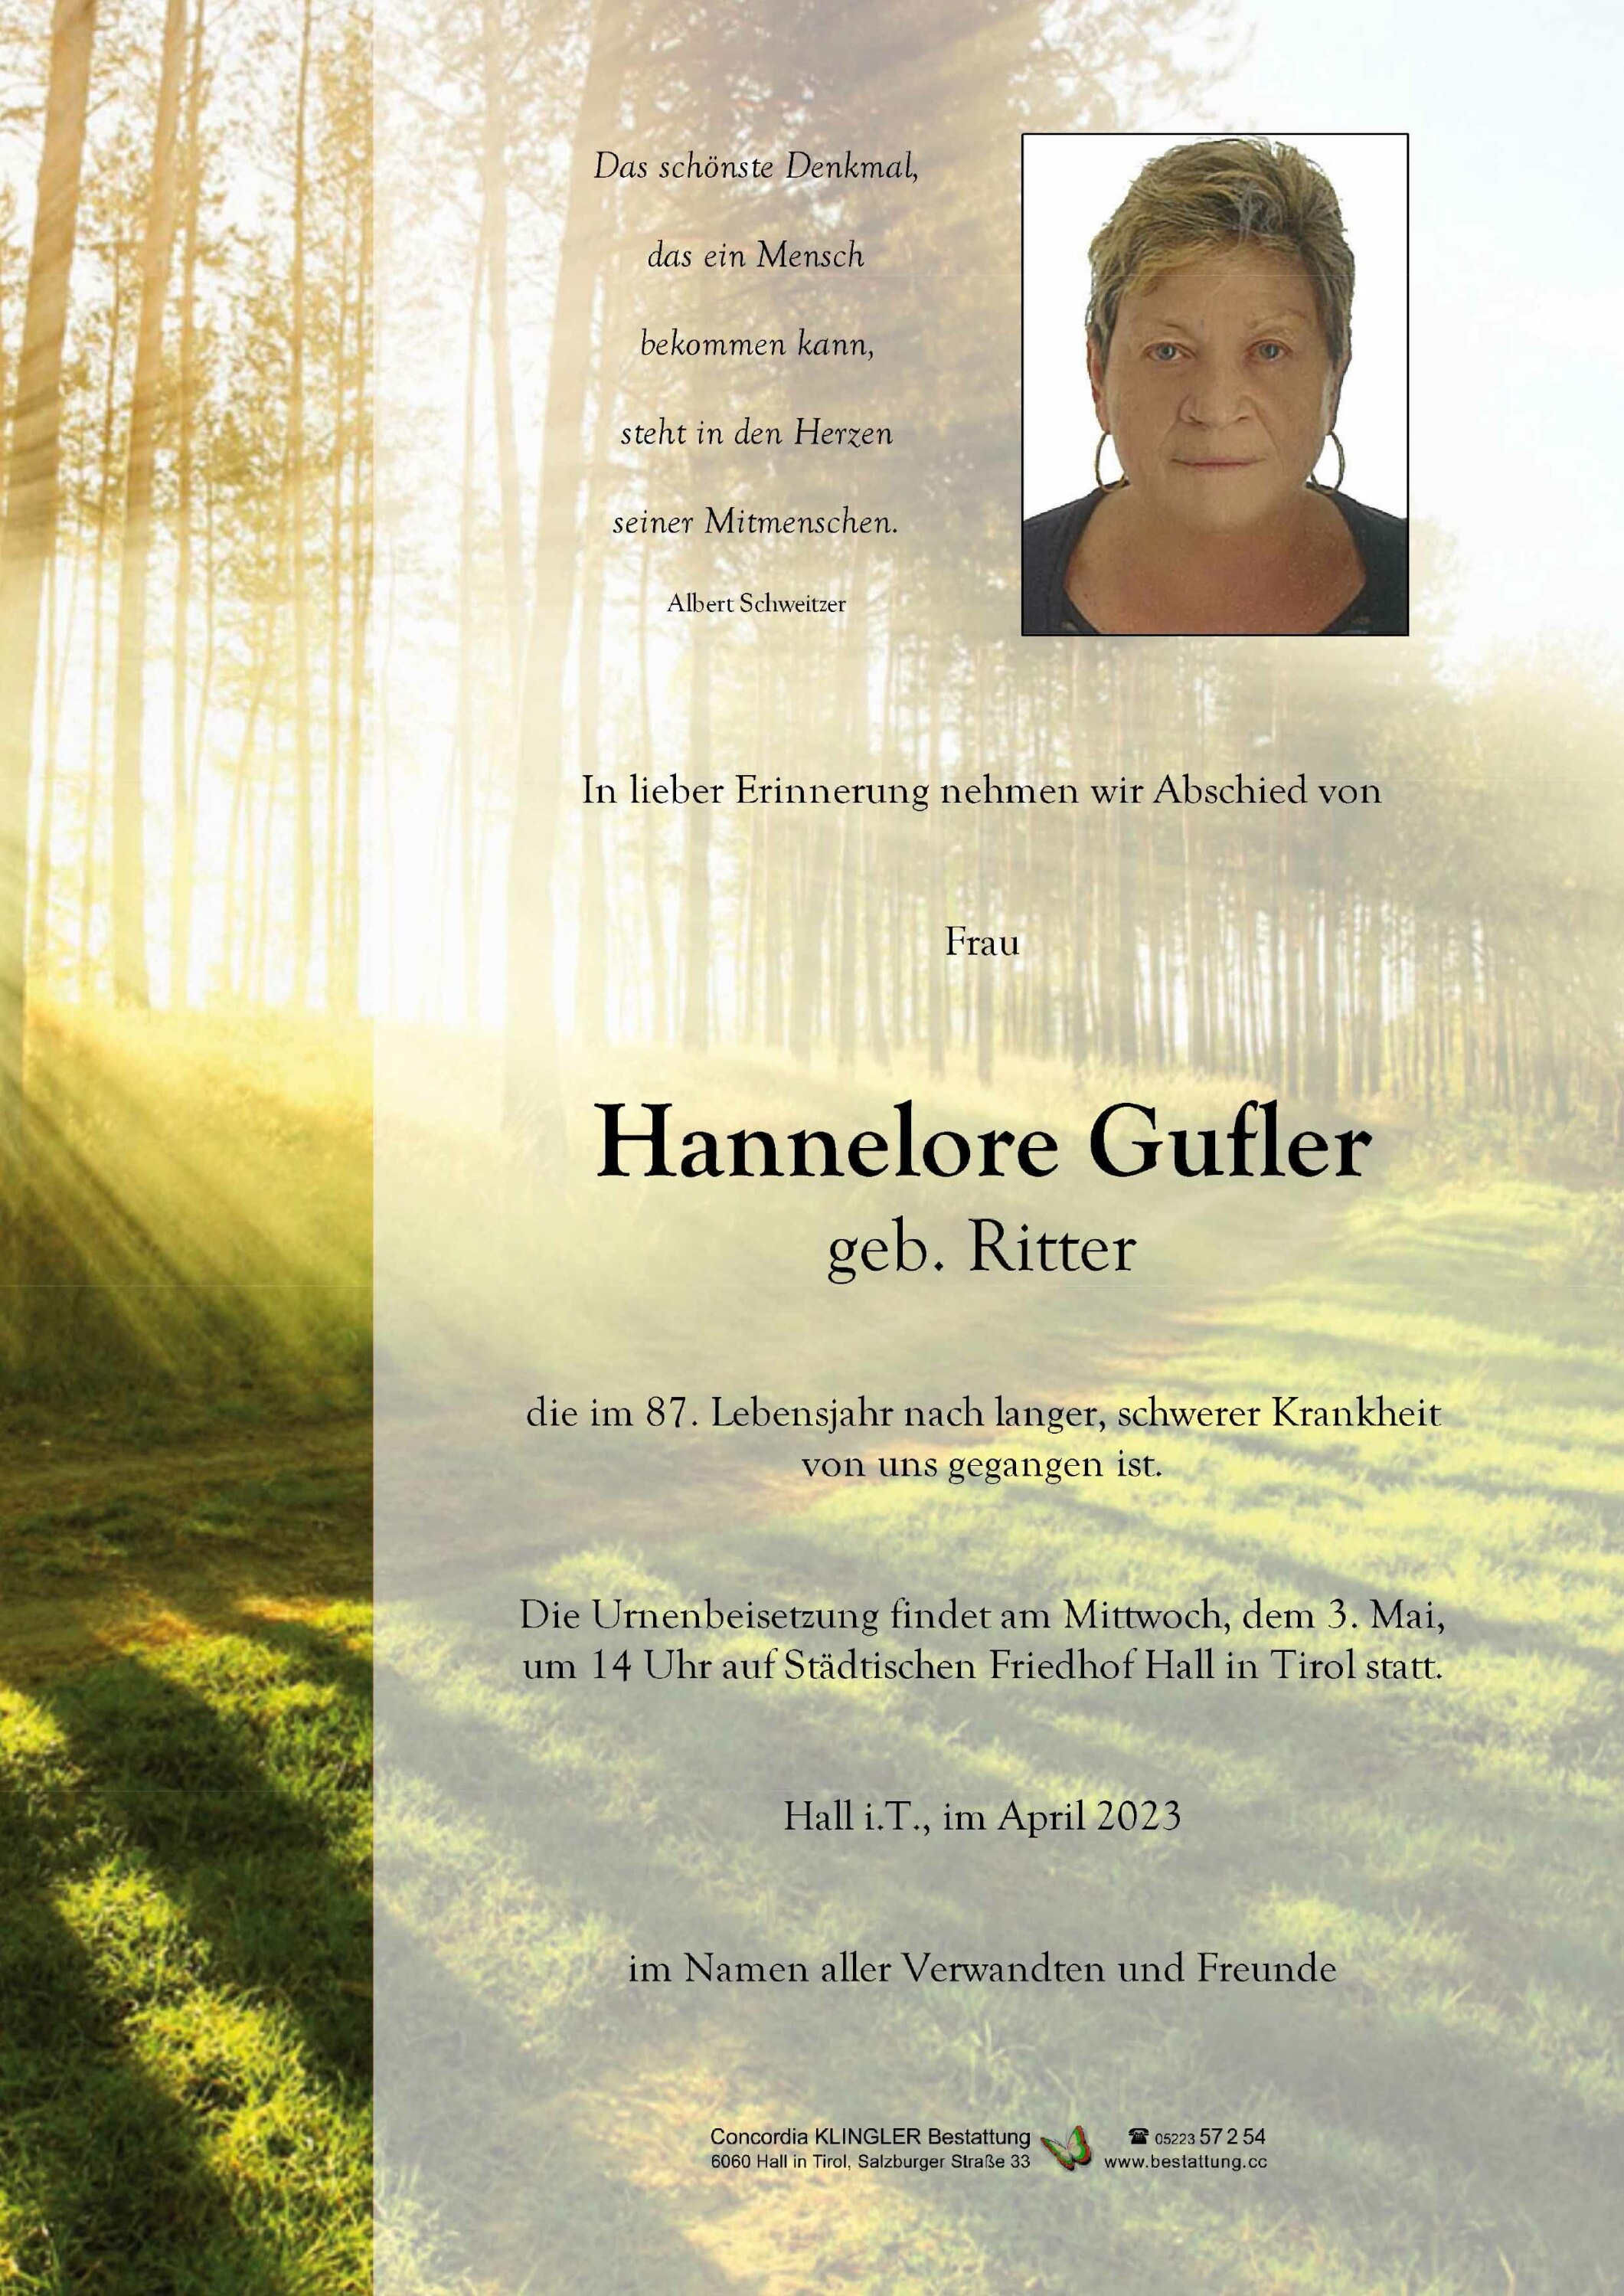 Hannelore Gufler